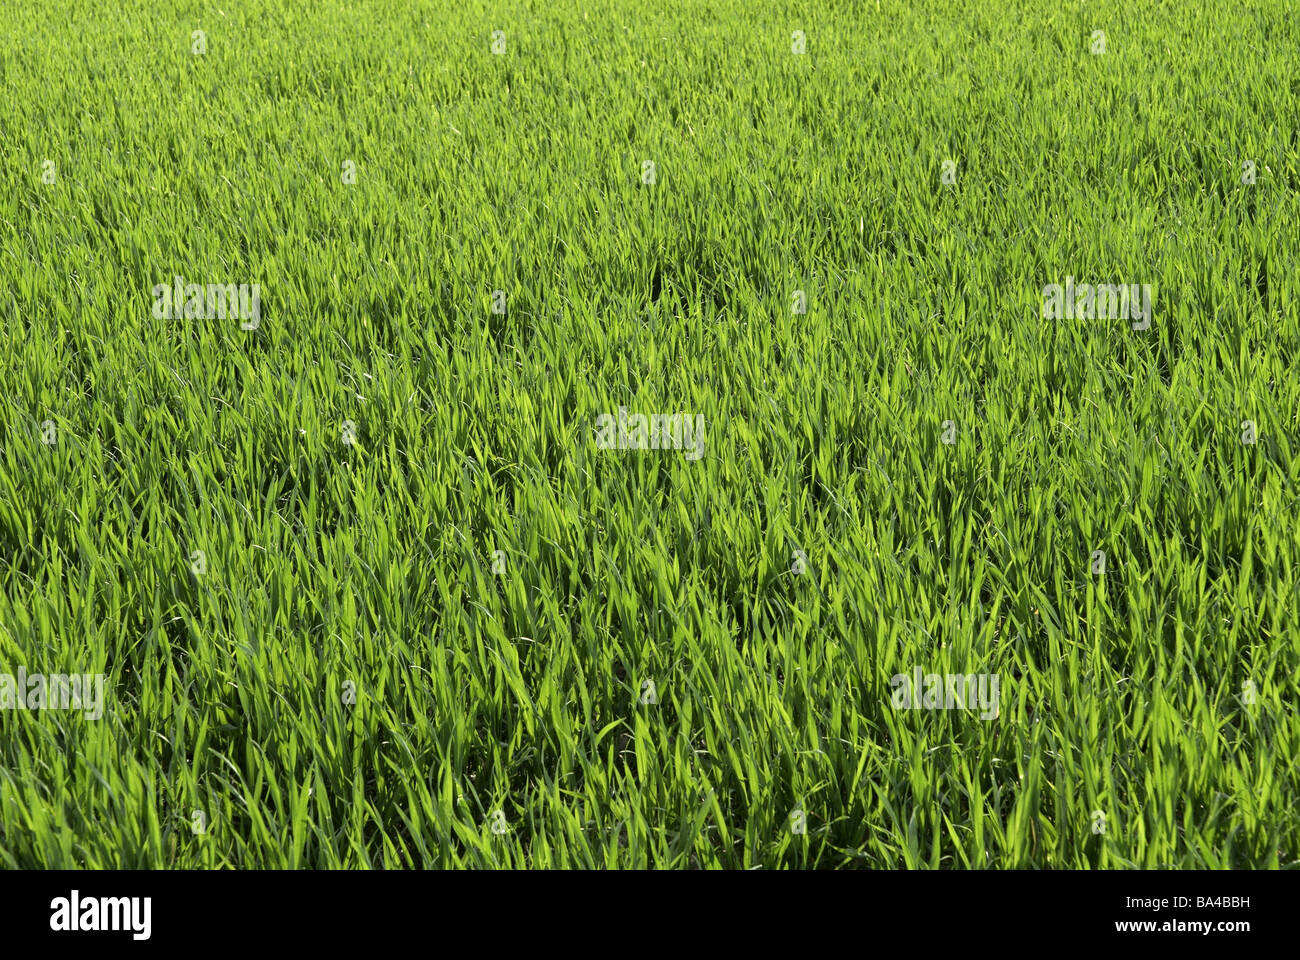 Getreide Getreide-Feld Hintergrund Detail Gerste Instinkt frische junge Frühling Frühling Hintergrund Hintergrund grün 04/2006-slave Stockfoto